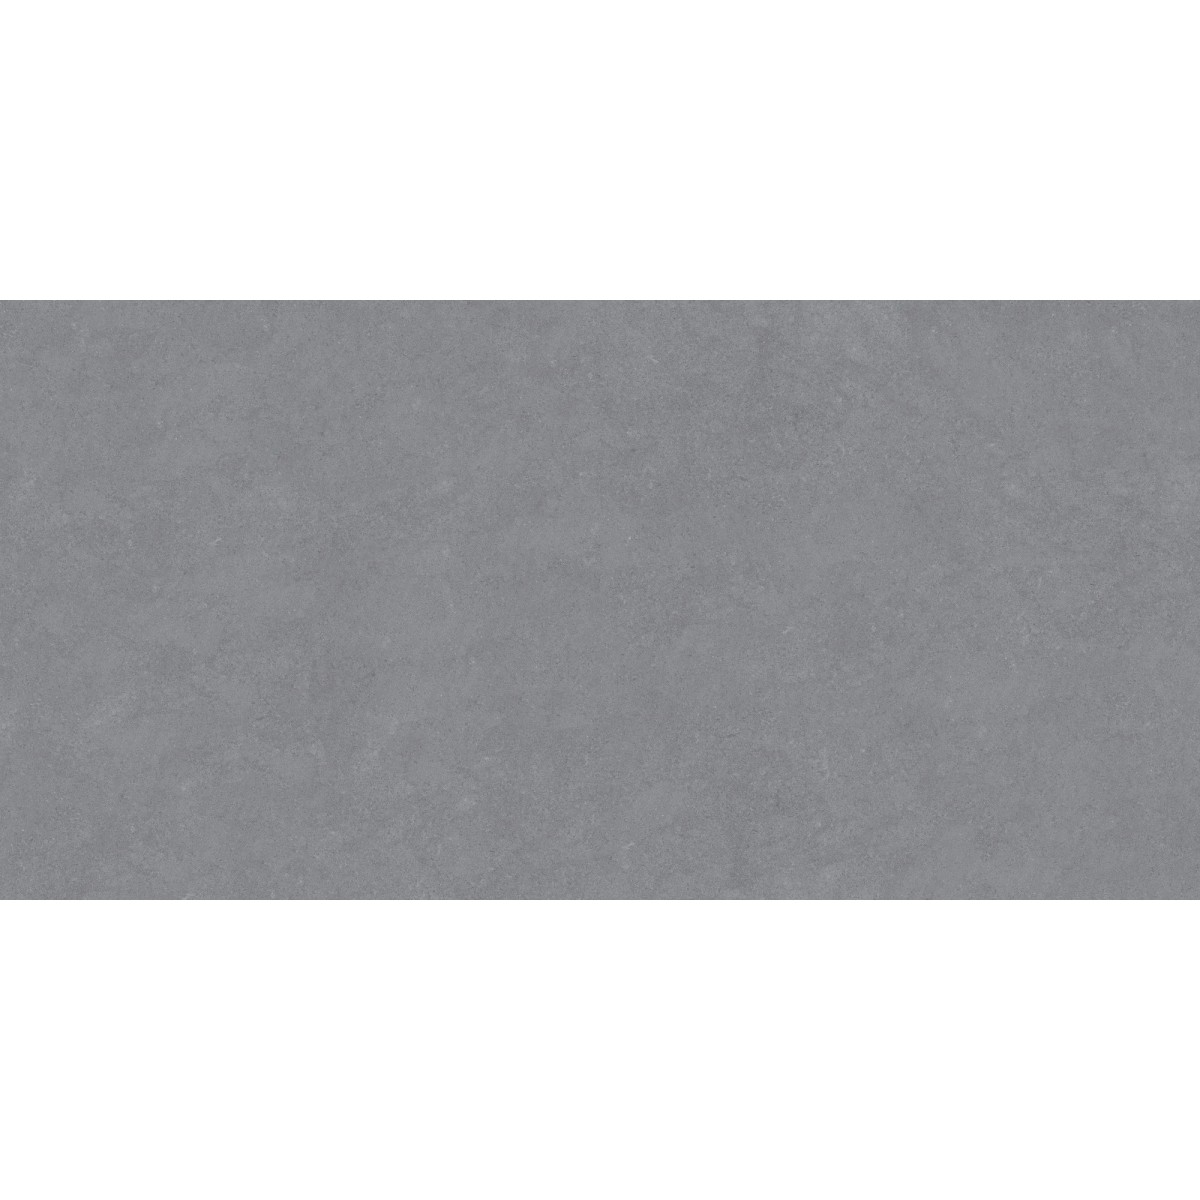 Landula Grey, 12mm